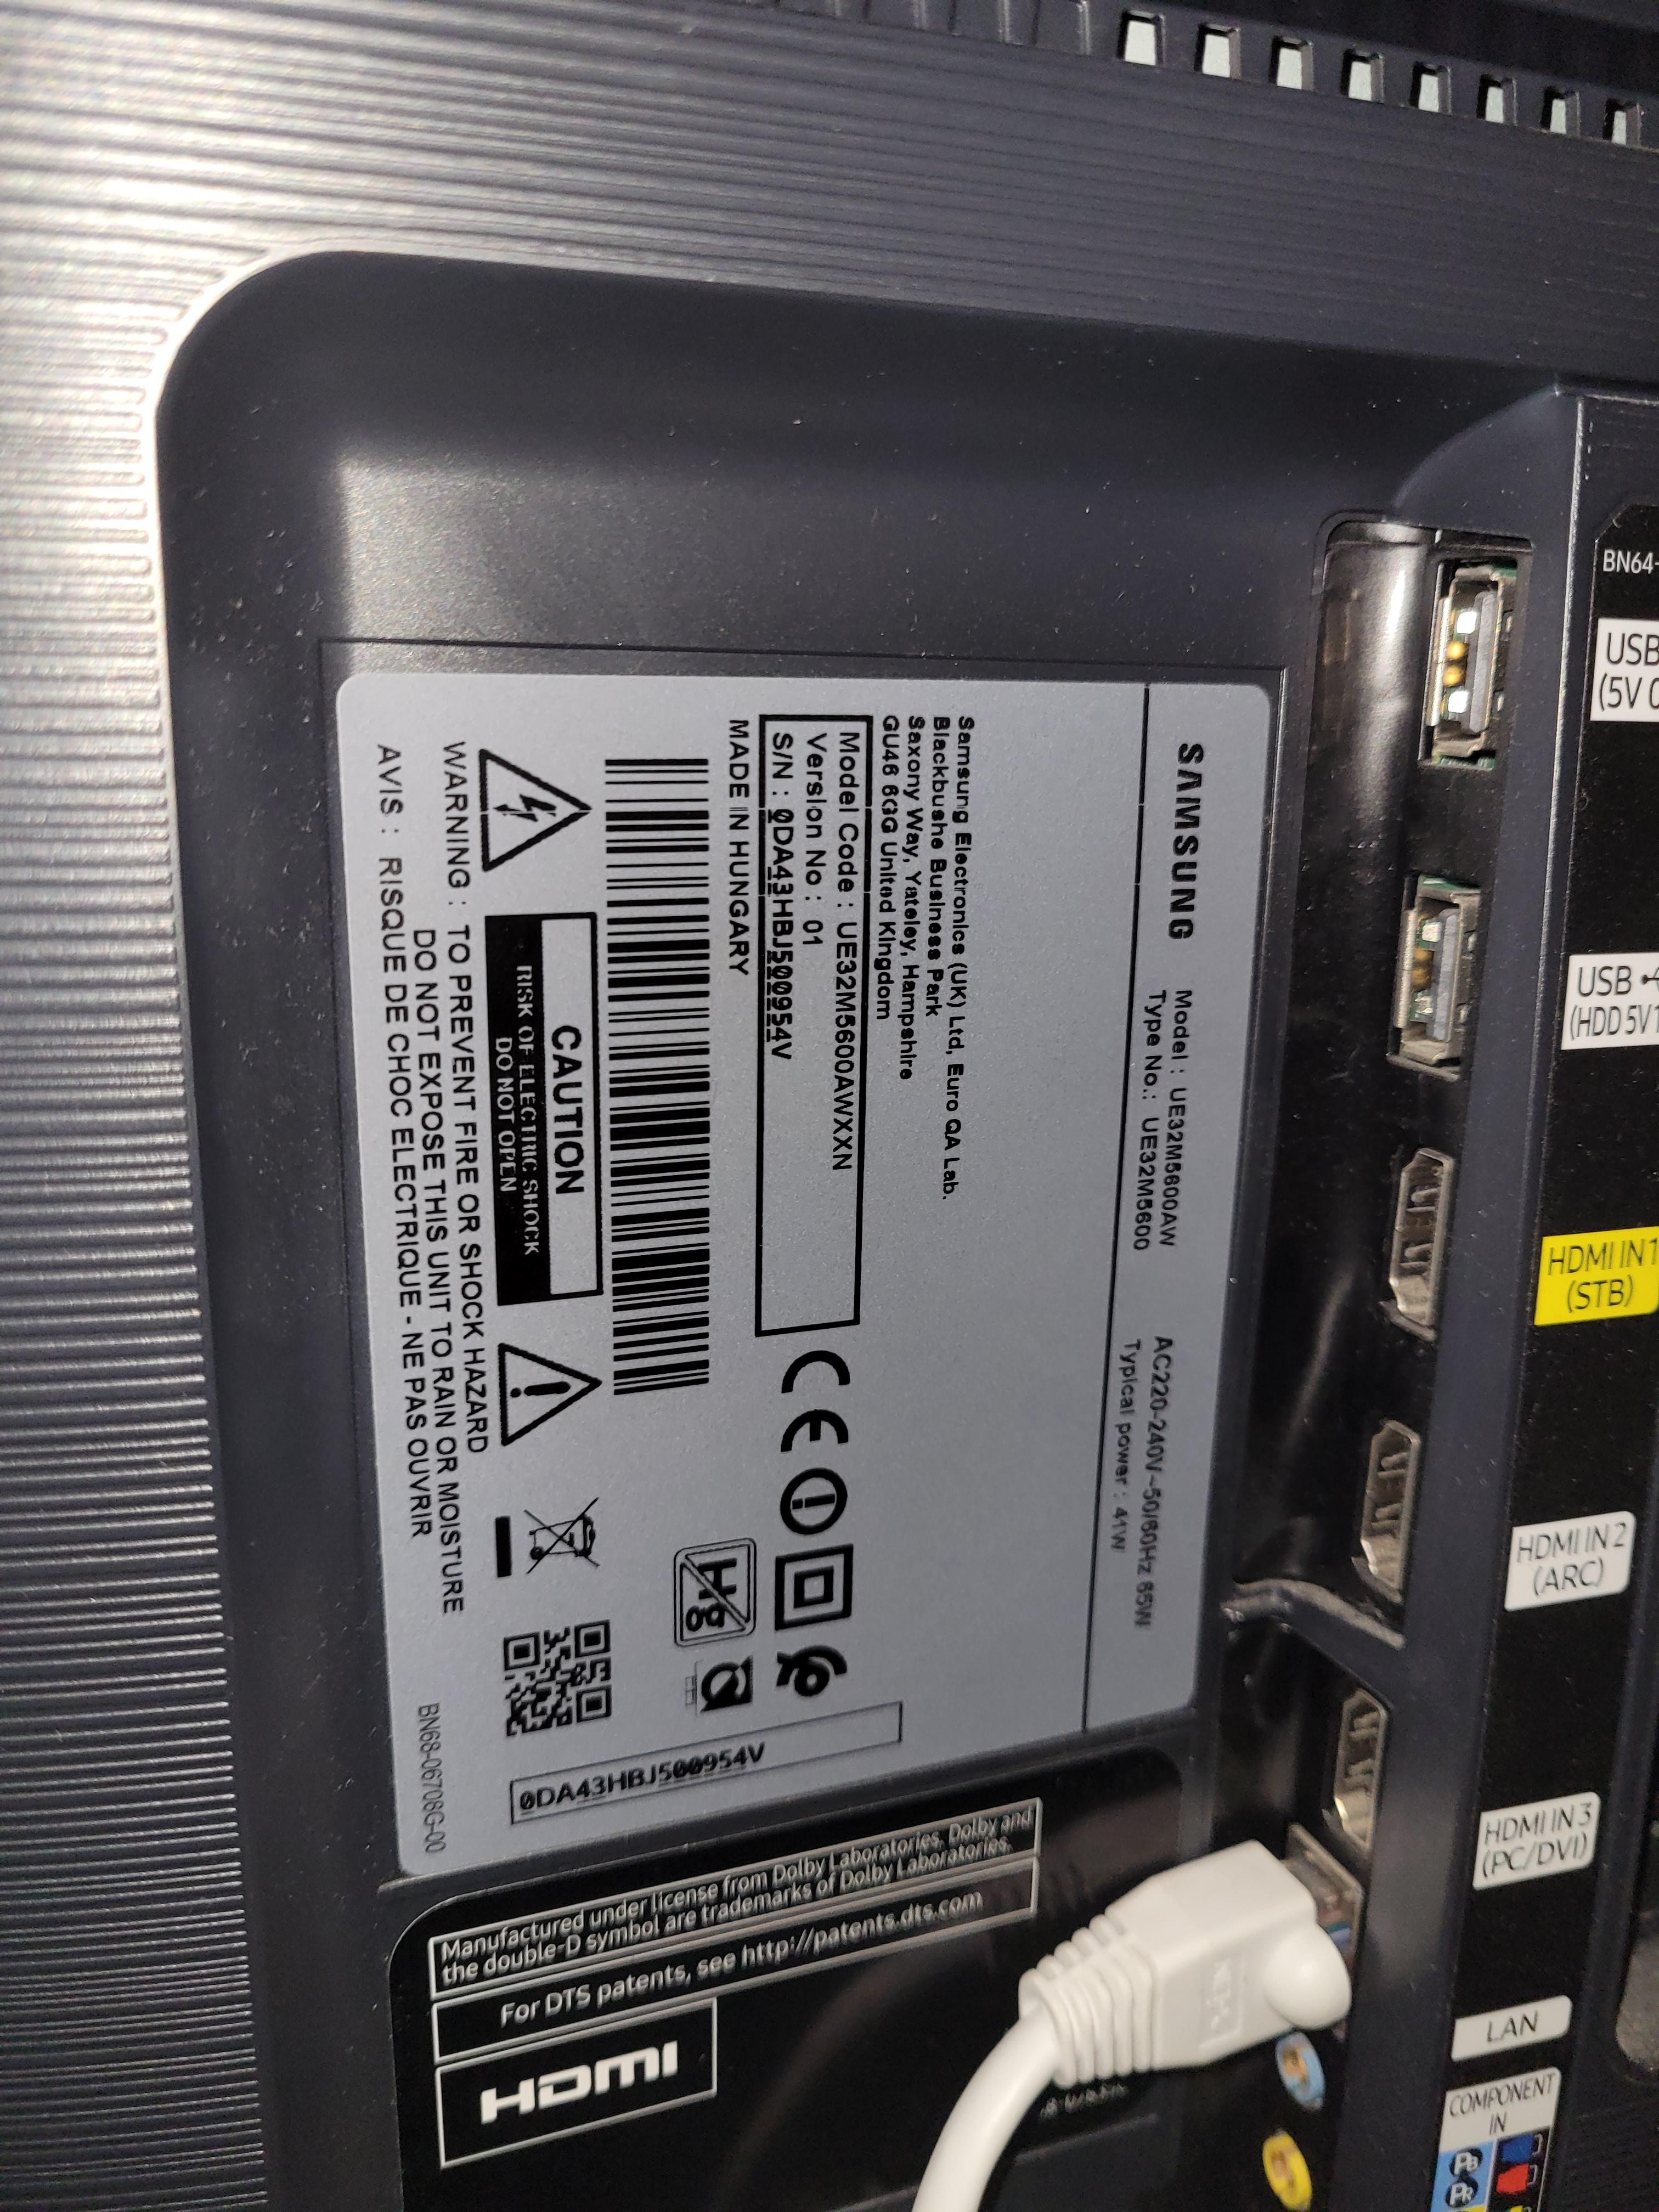 Opgelost: PS2 X HDMI werkt niet - Samsung Community